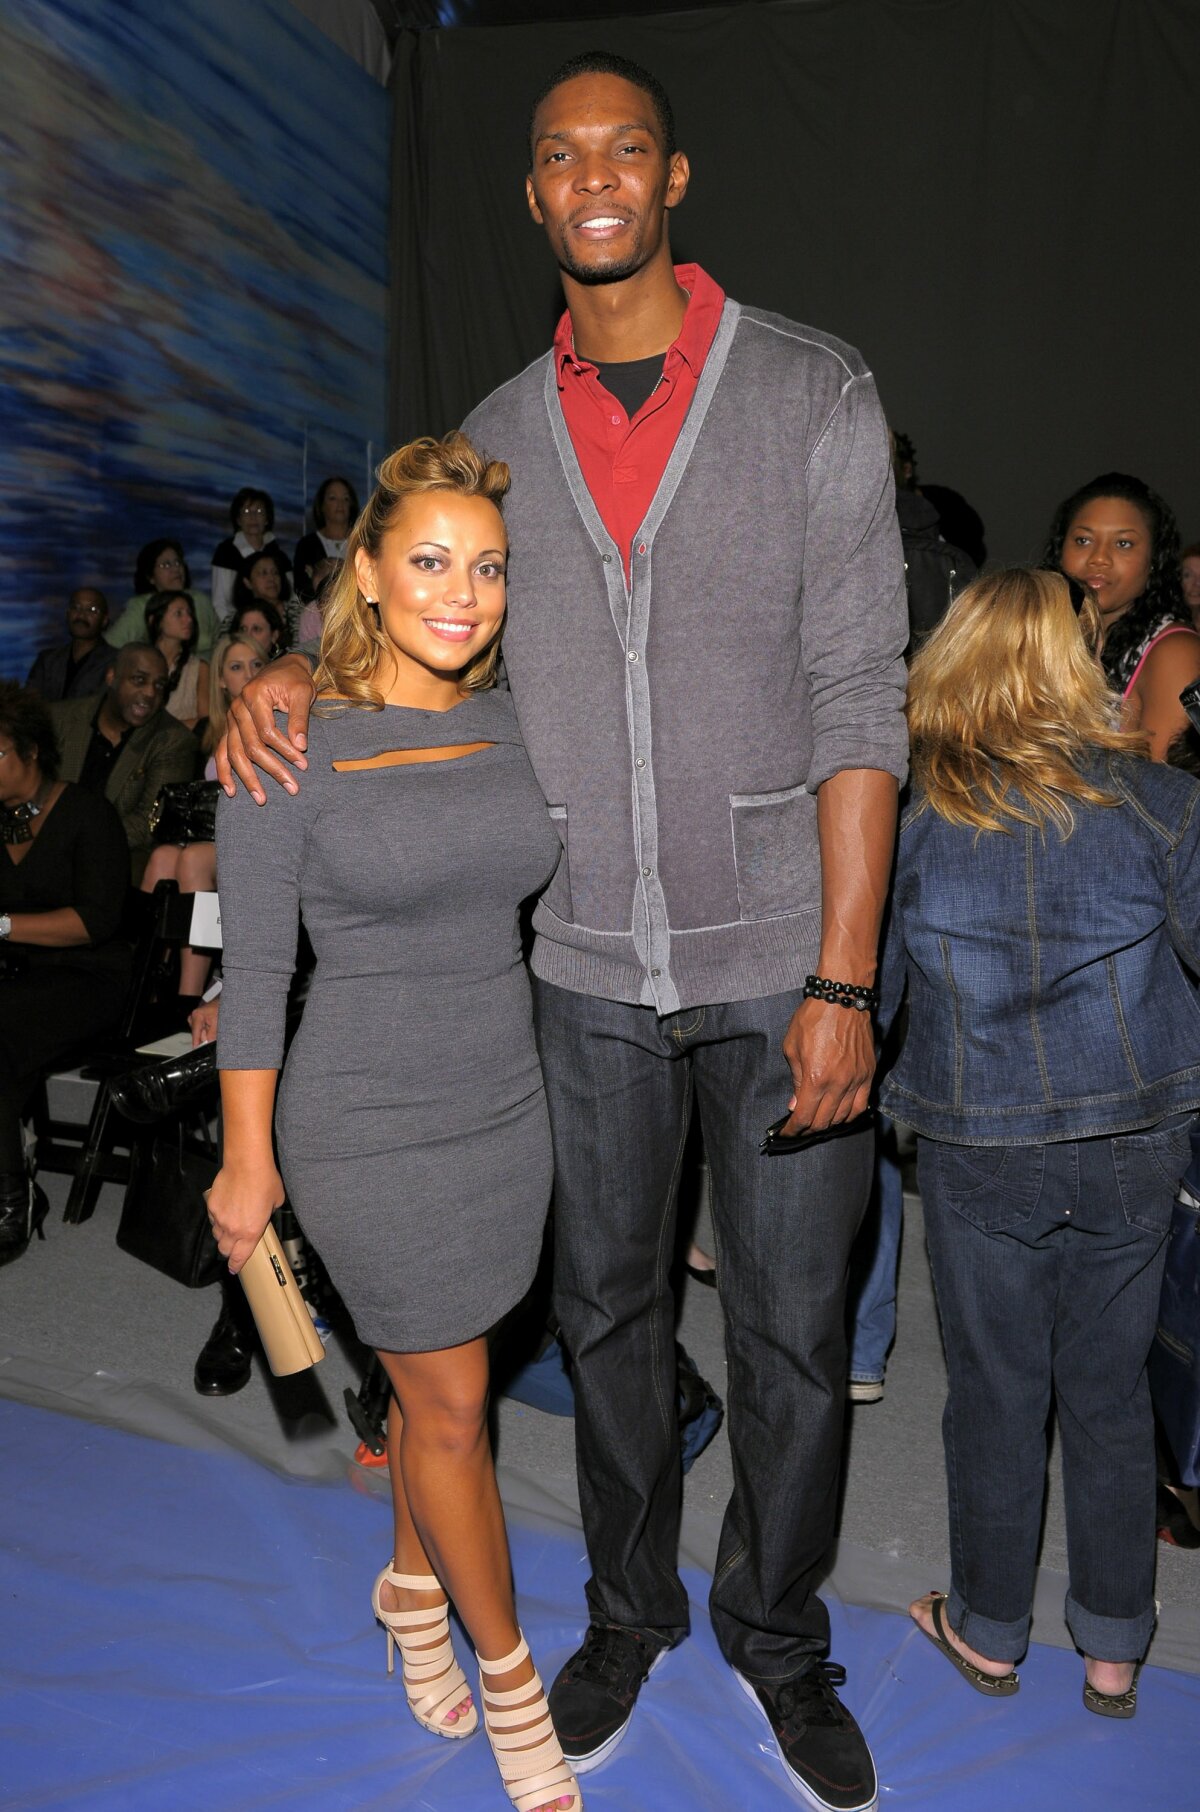 FOTO! O altfel de finală NBA. Iată confruntarea soţiilor de la Mavericks şi Heat!